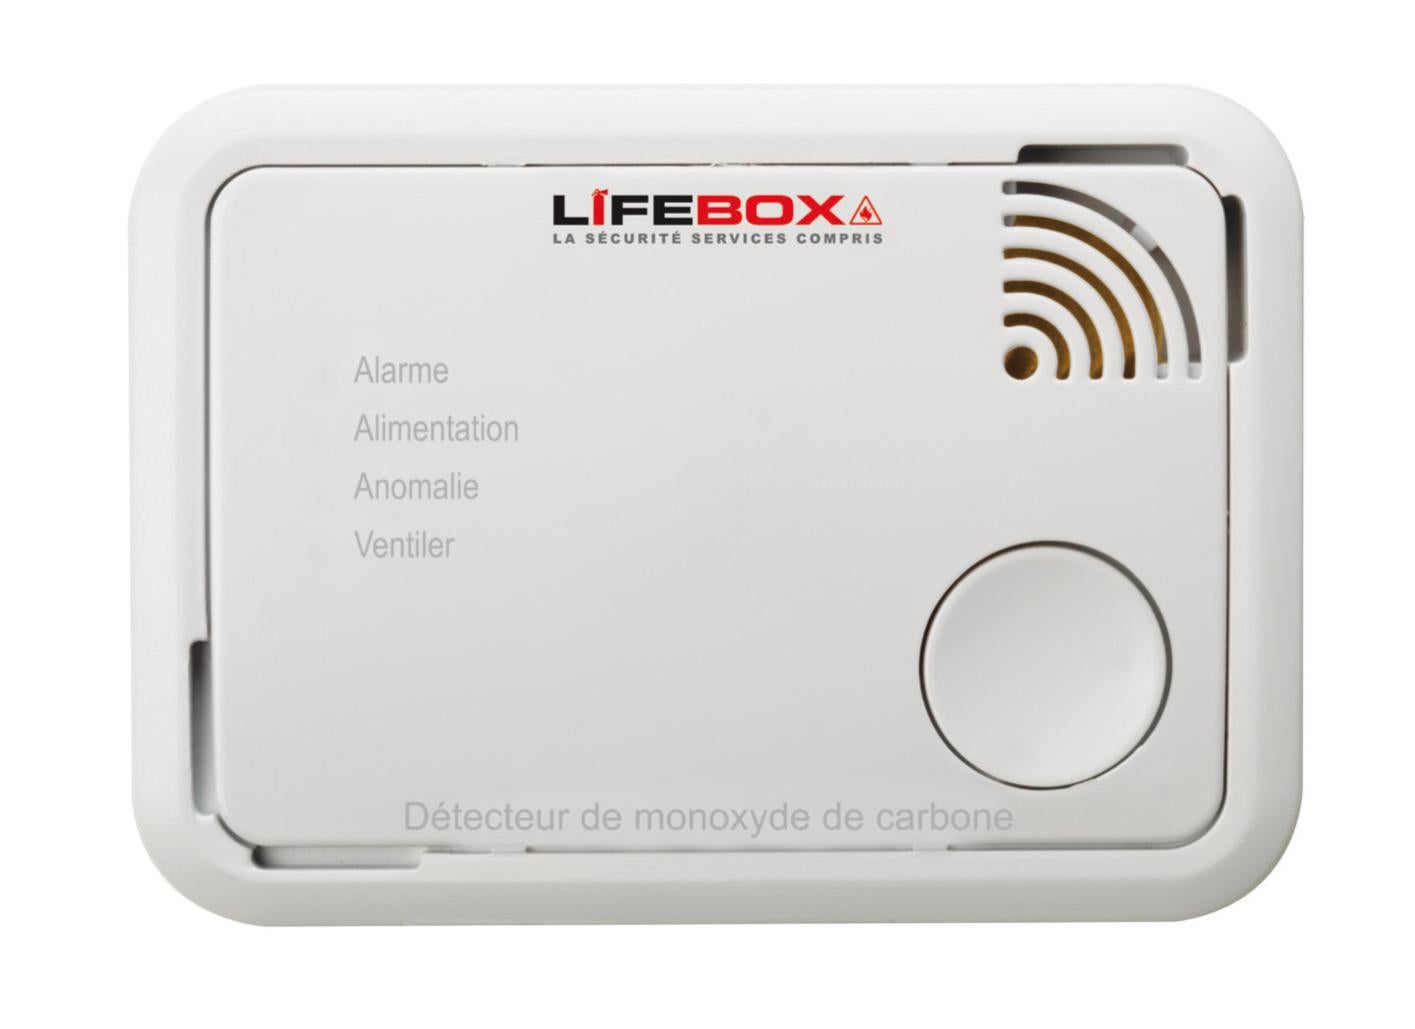 Détecteur De Monoxyde De Carbone Lifebox 7 Ans Leroy Merlin 1125